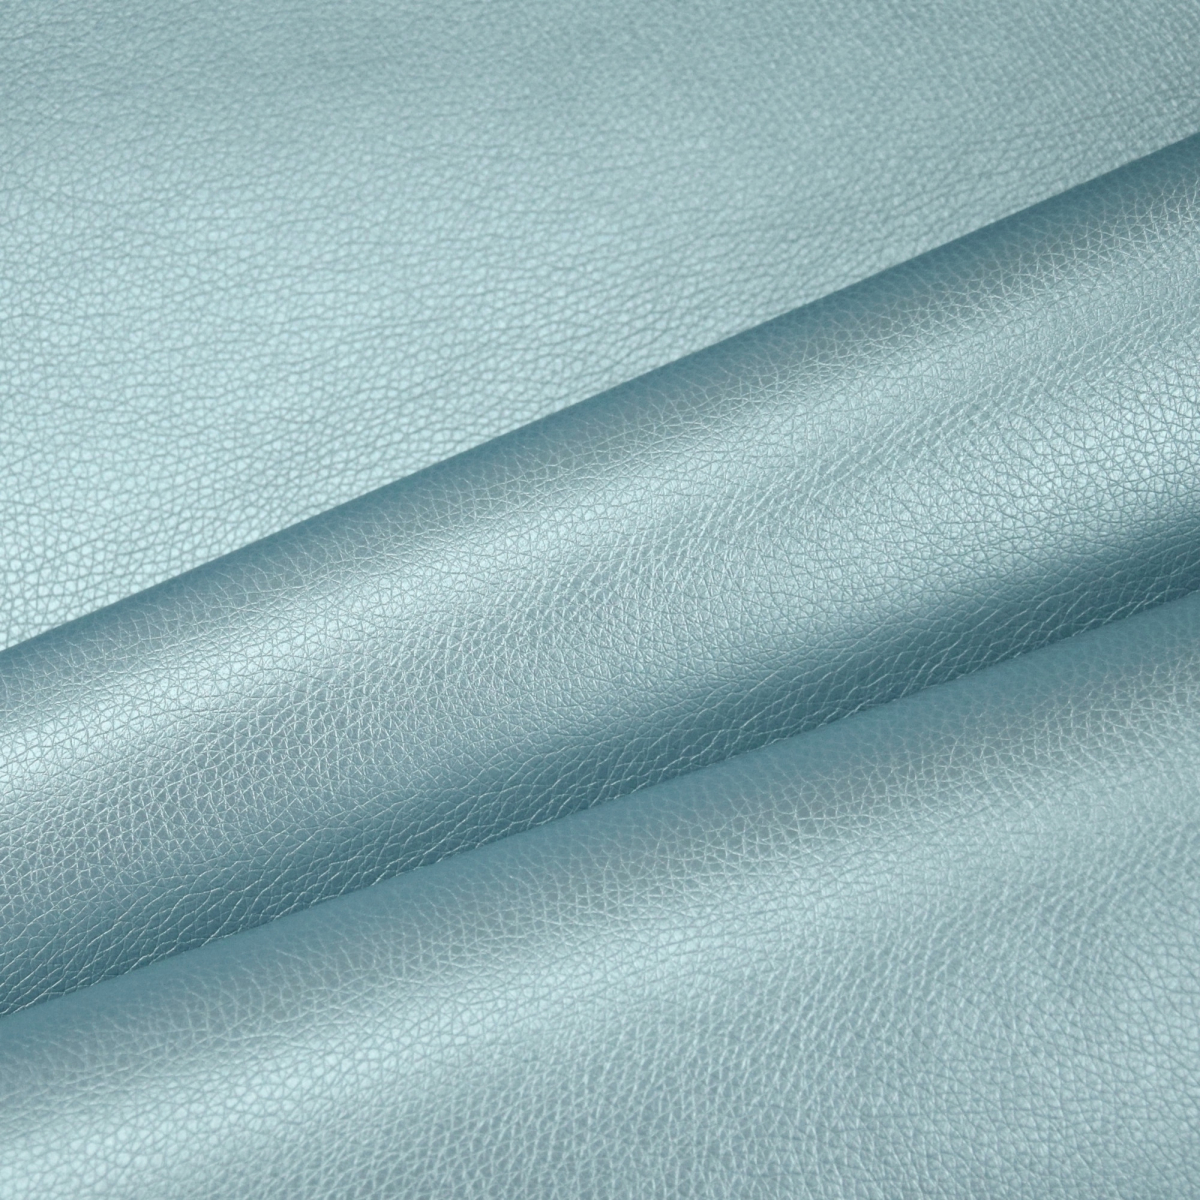 bleu turquoise gris mauve fleur bleu en coton damassé jacquard renforcer couverture Nous